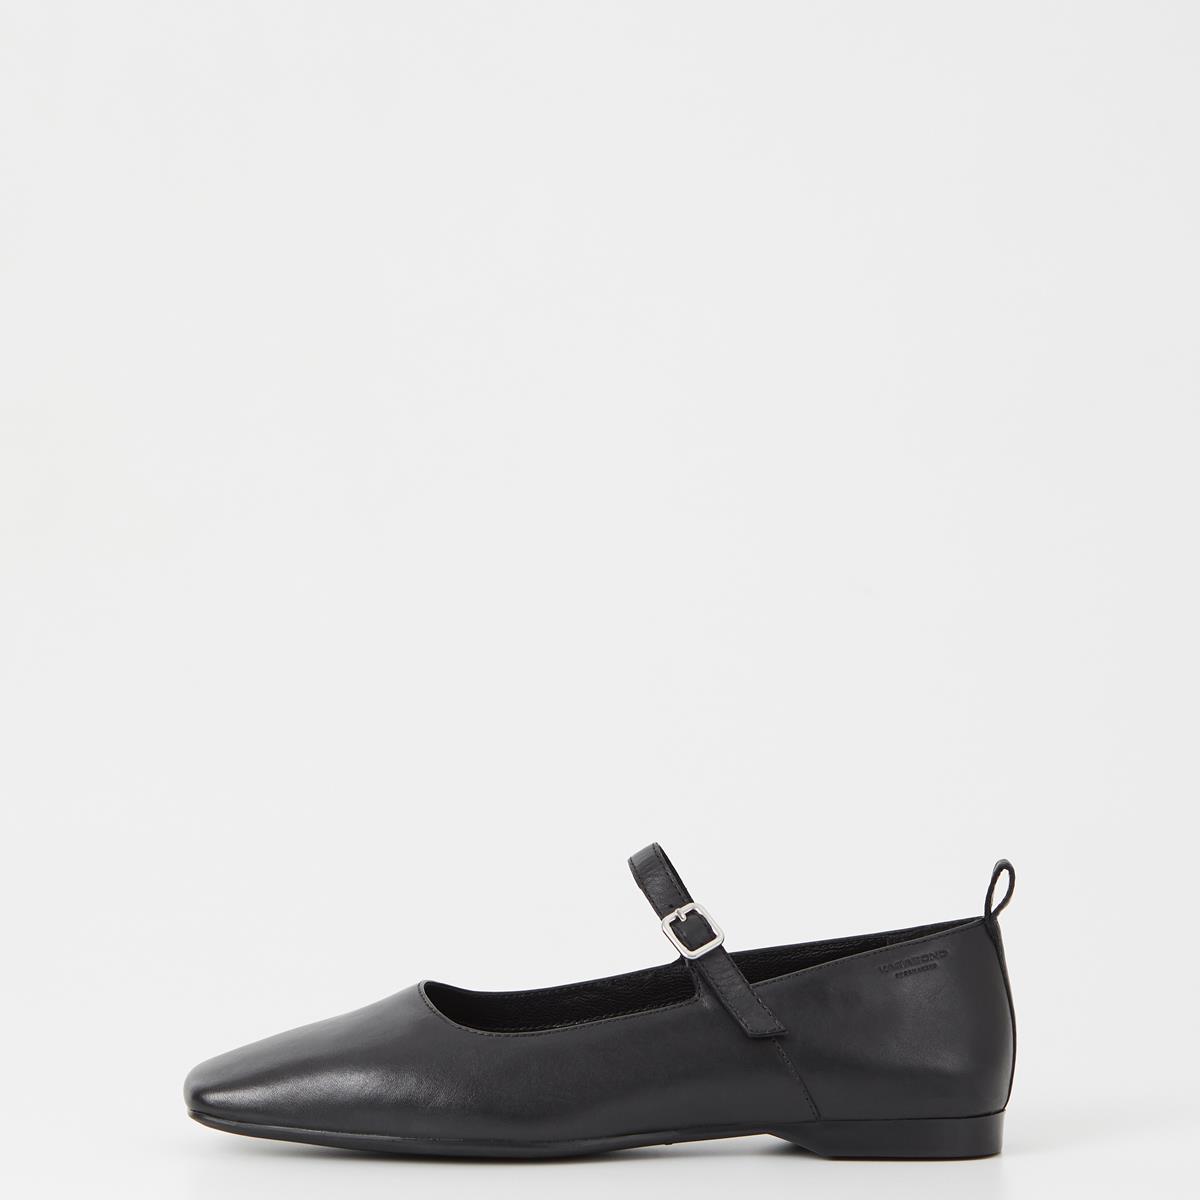 Delia - Black Shoes Woman | Vagabond